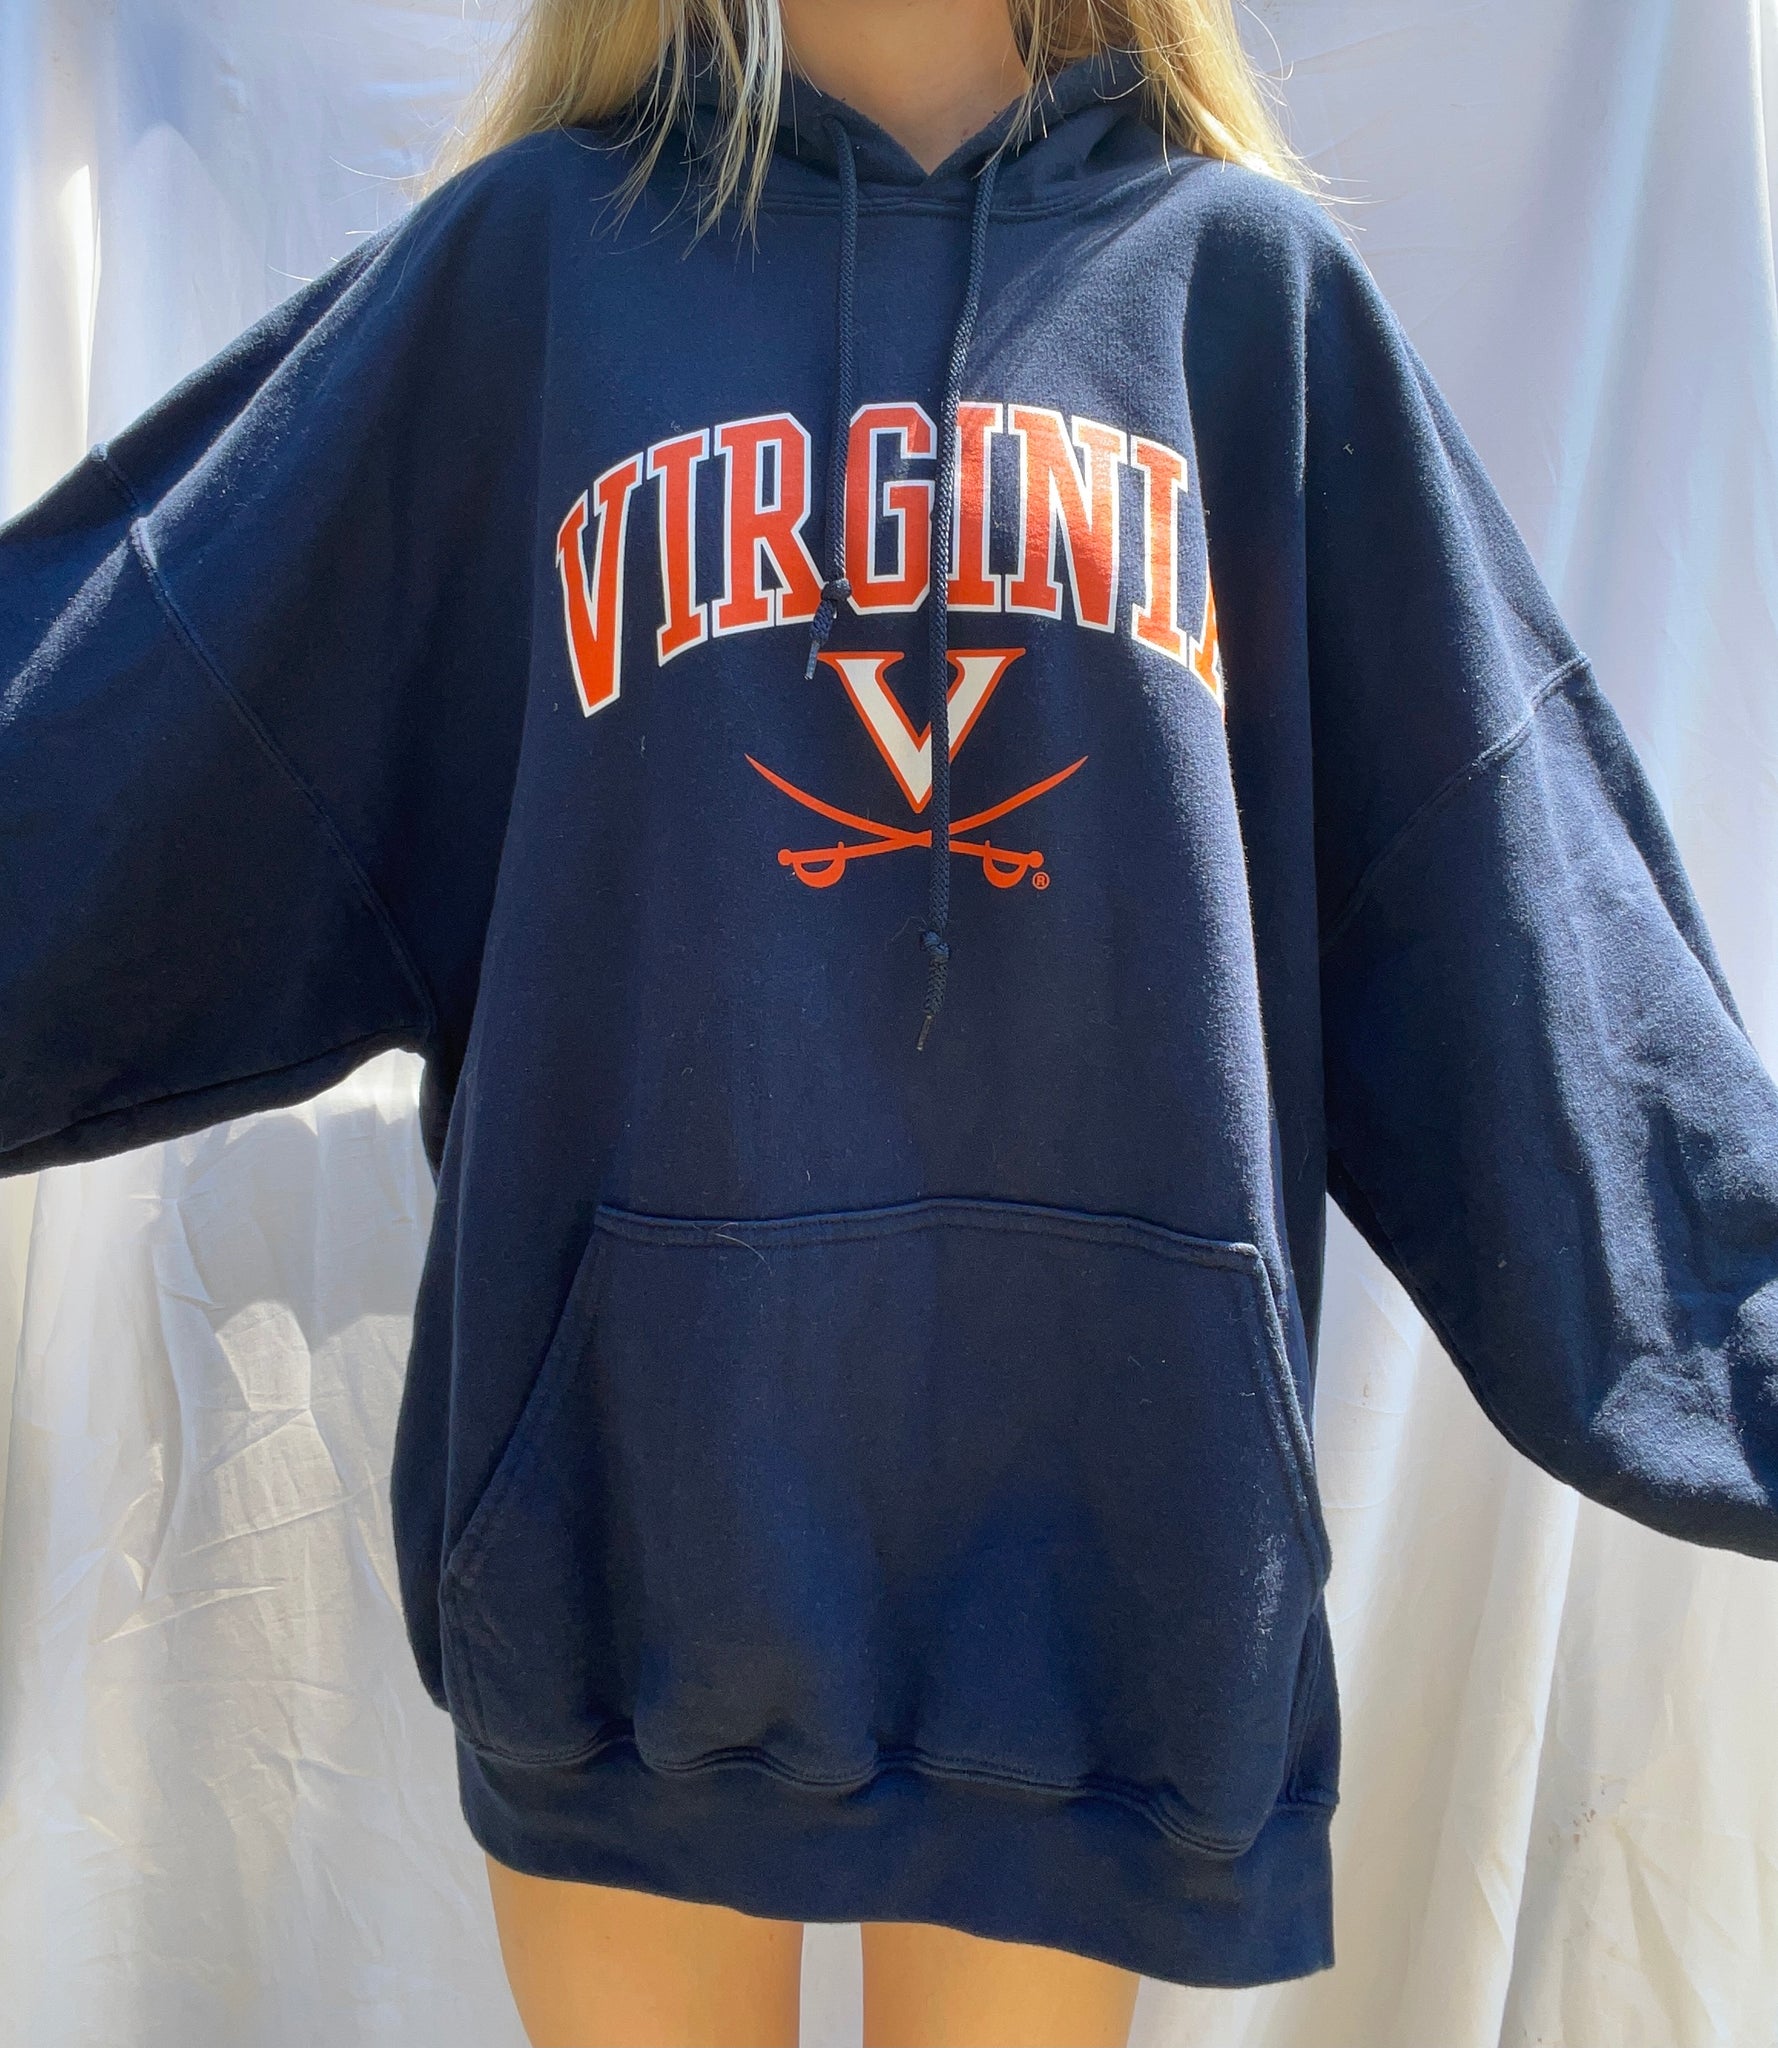 University of Virginia Sweatshirts, Virginia Cavaliers Hoodies